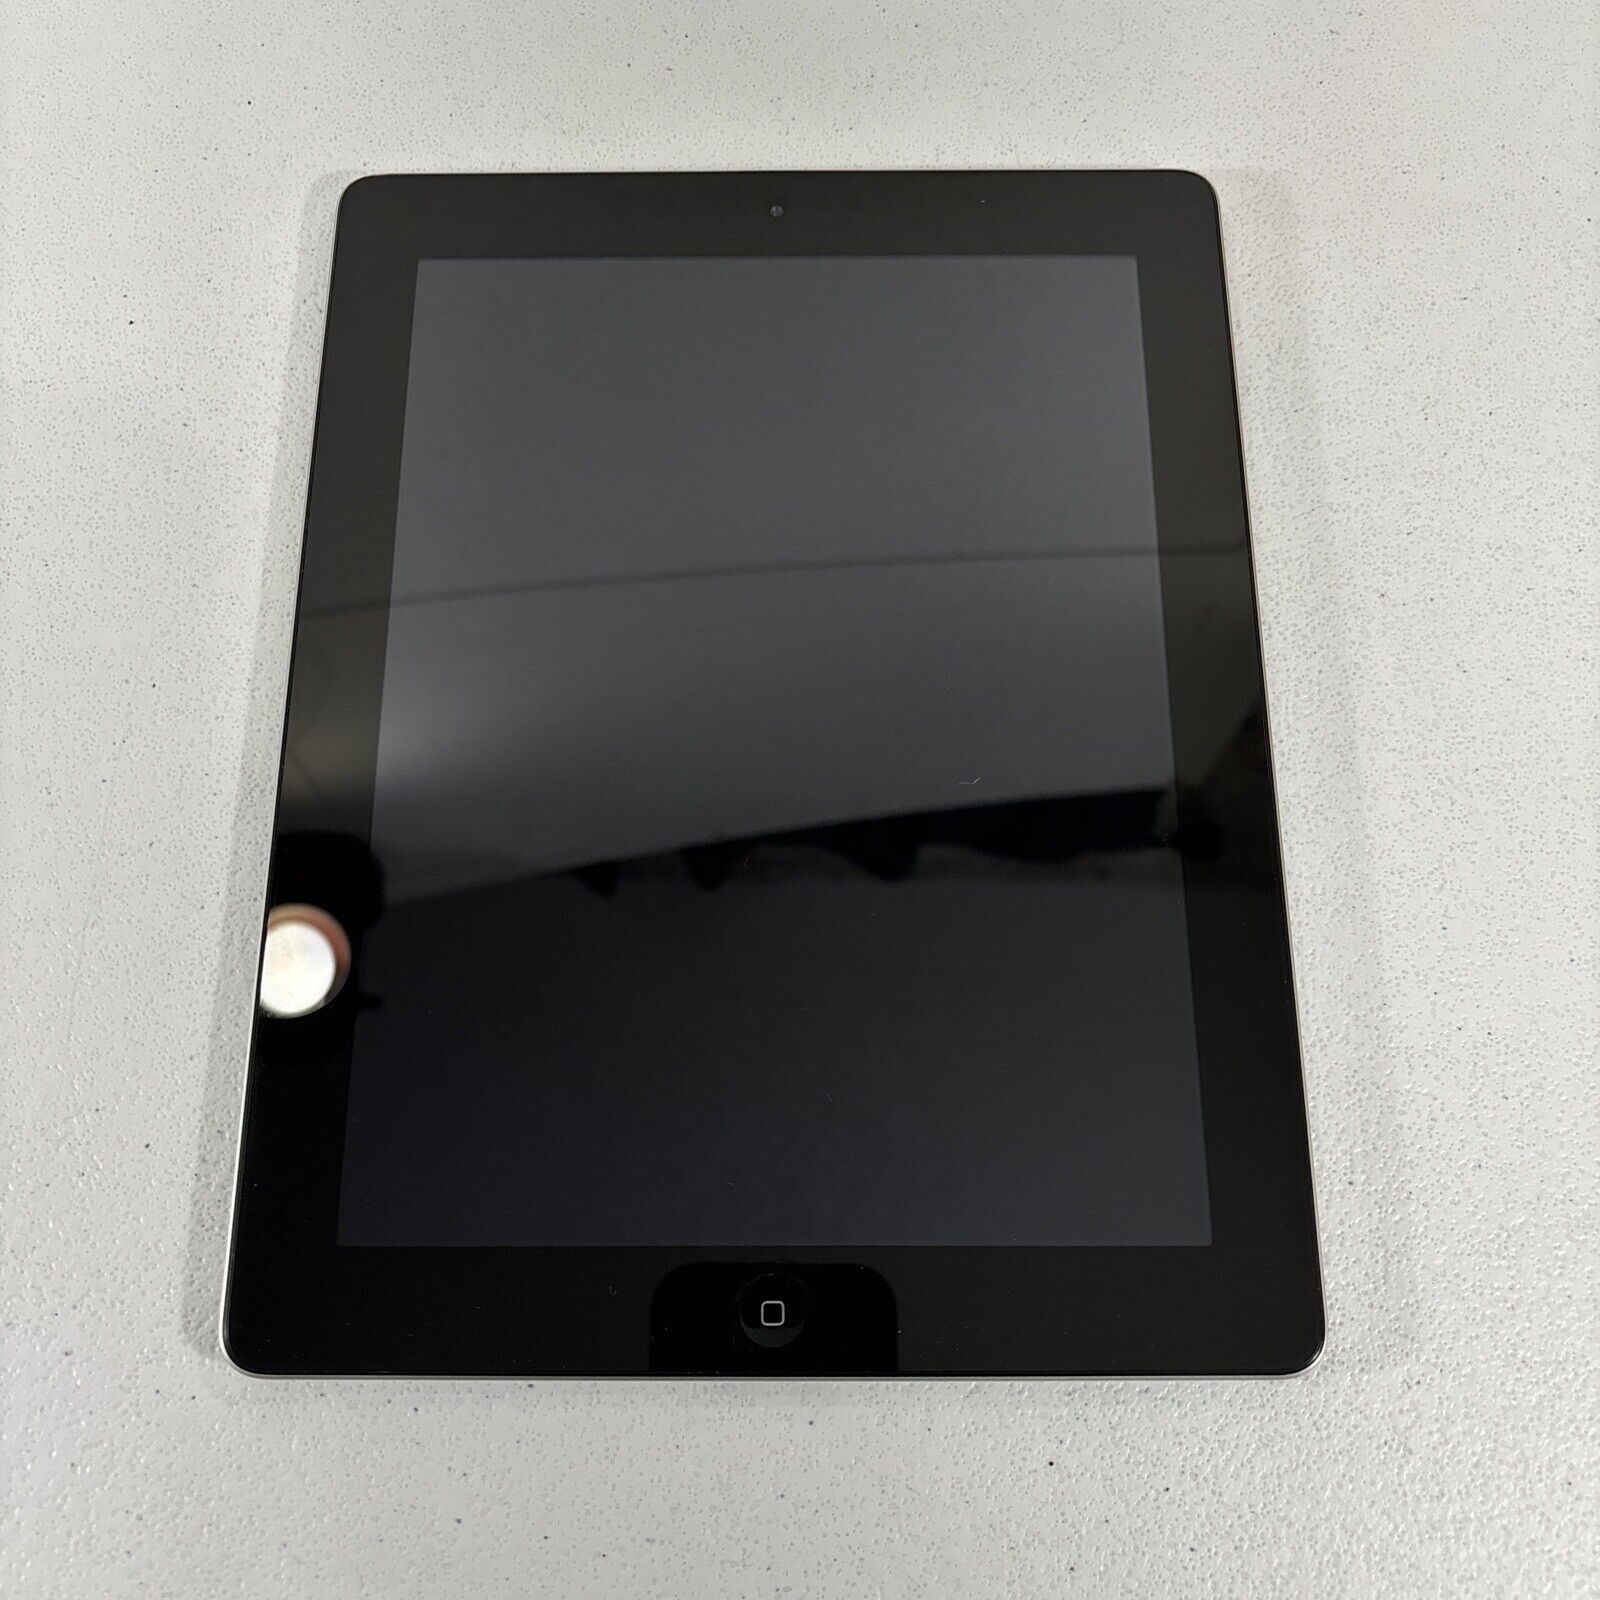 APPLE A1395 iPad 2nd Gen 9.7' 16GB Wi-Fi - MC769LL/A Tested & Working